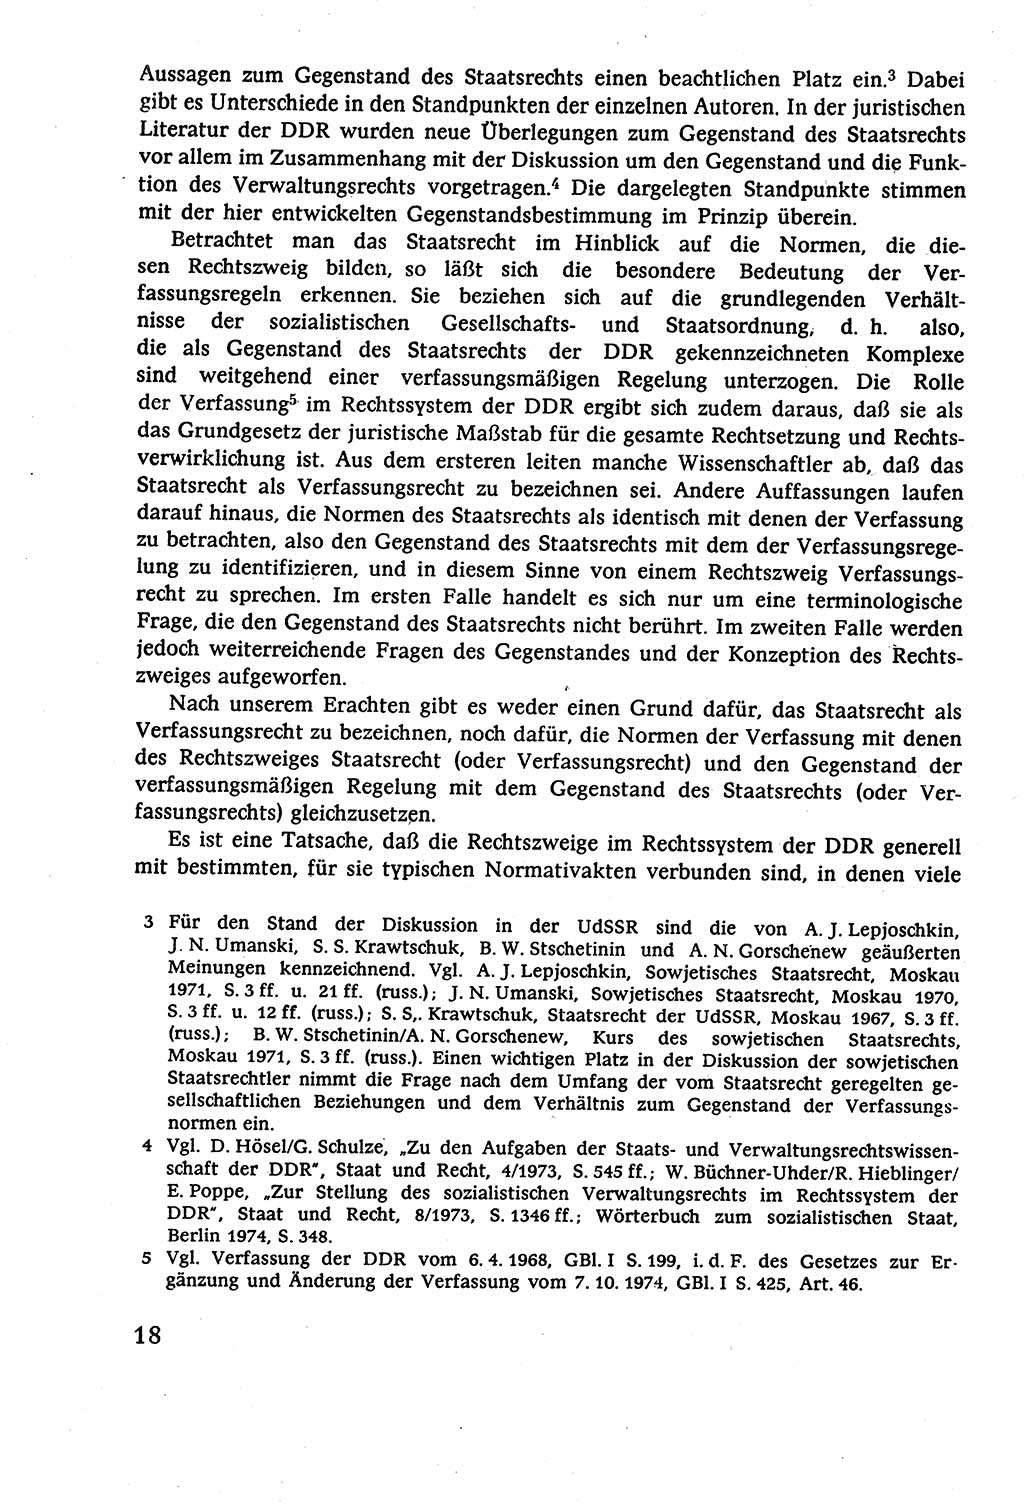 Staatsrecht der DDR (Deutsche Demokratische Republik), Lehrbuch 1977, Seite 18 (St.-R. DDR Lb. 1977, S. 18)